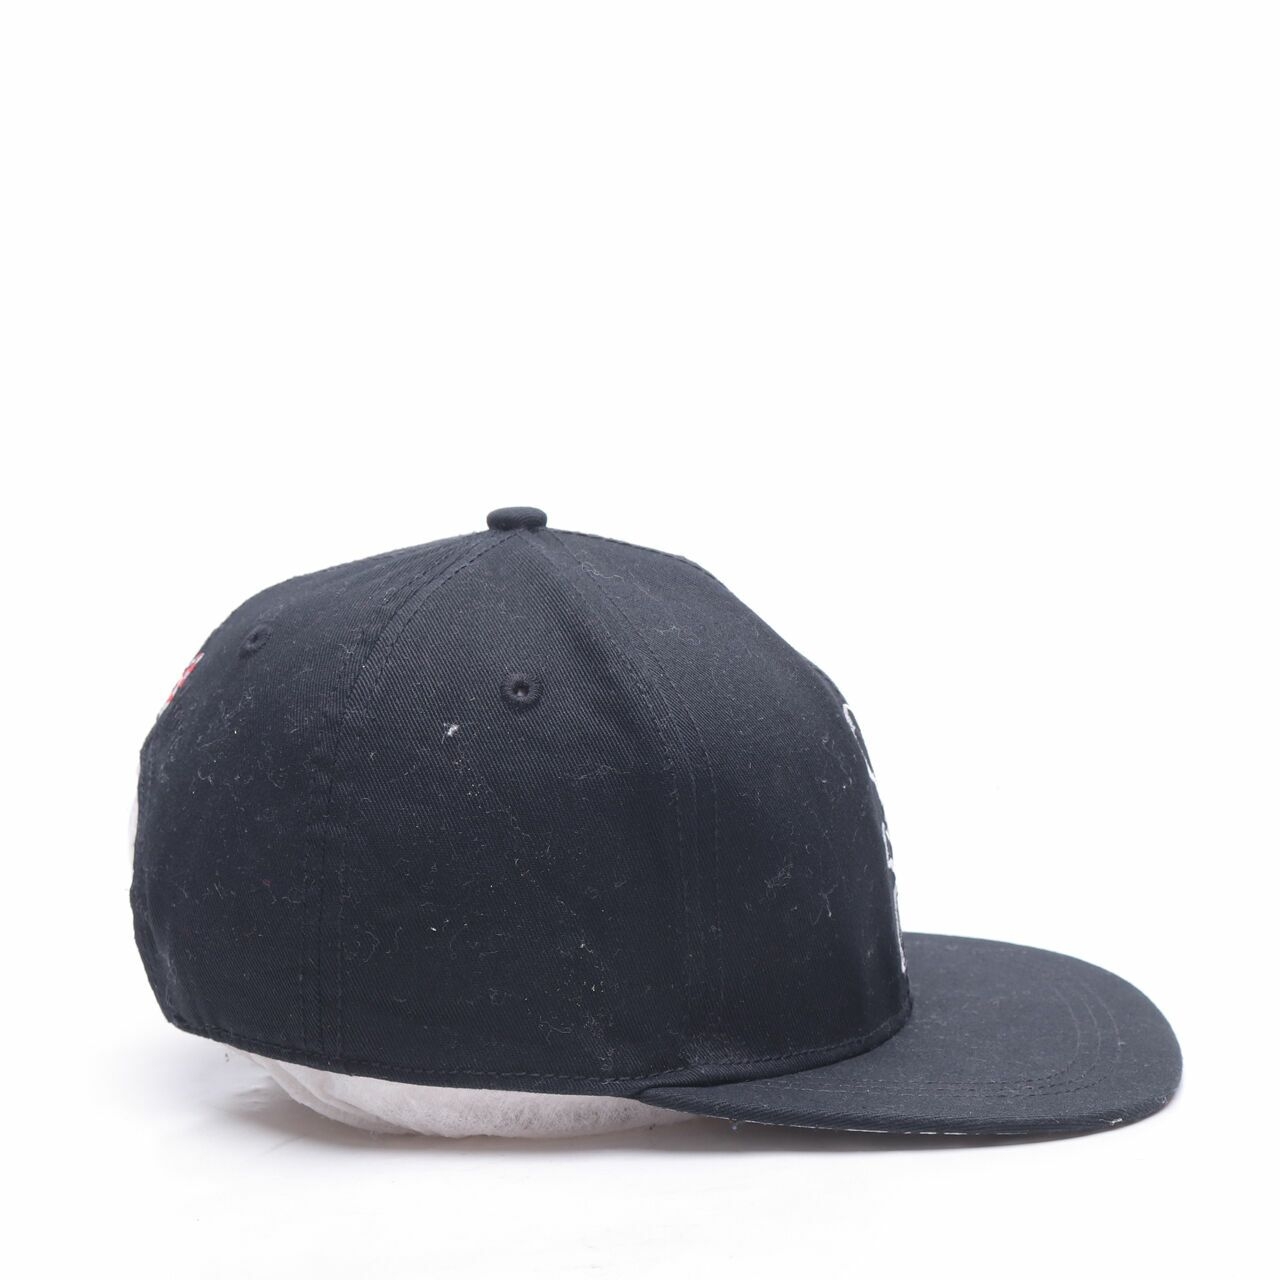 Meters/bonwe Black Hats